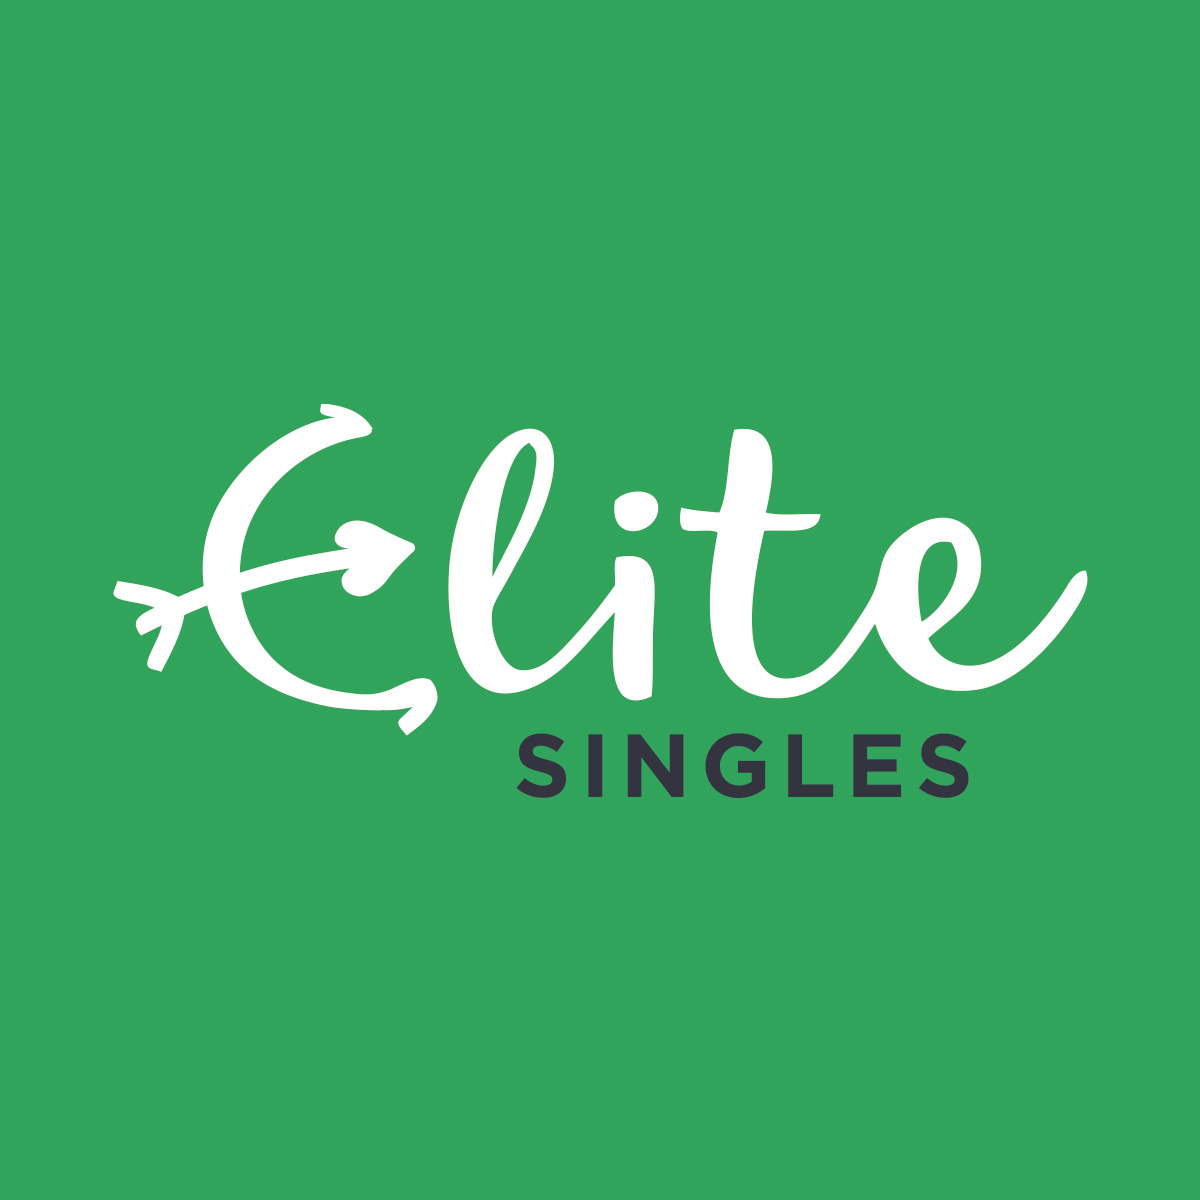 Elite dating sites in Bangkok